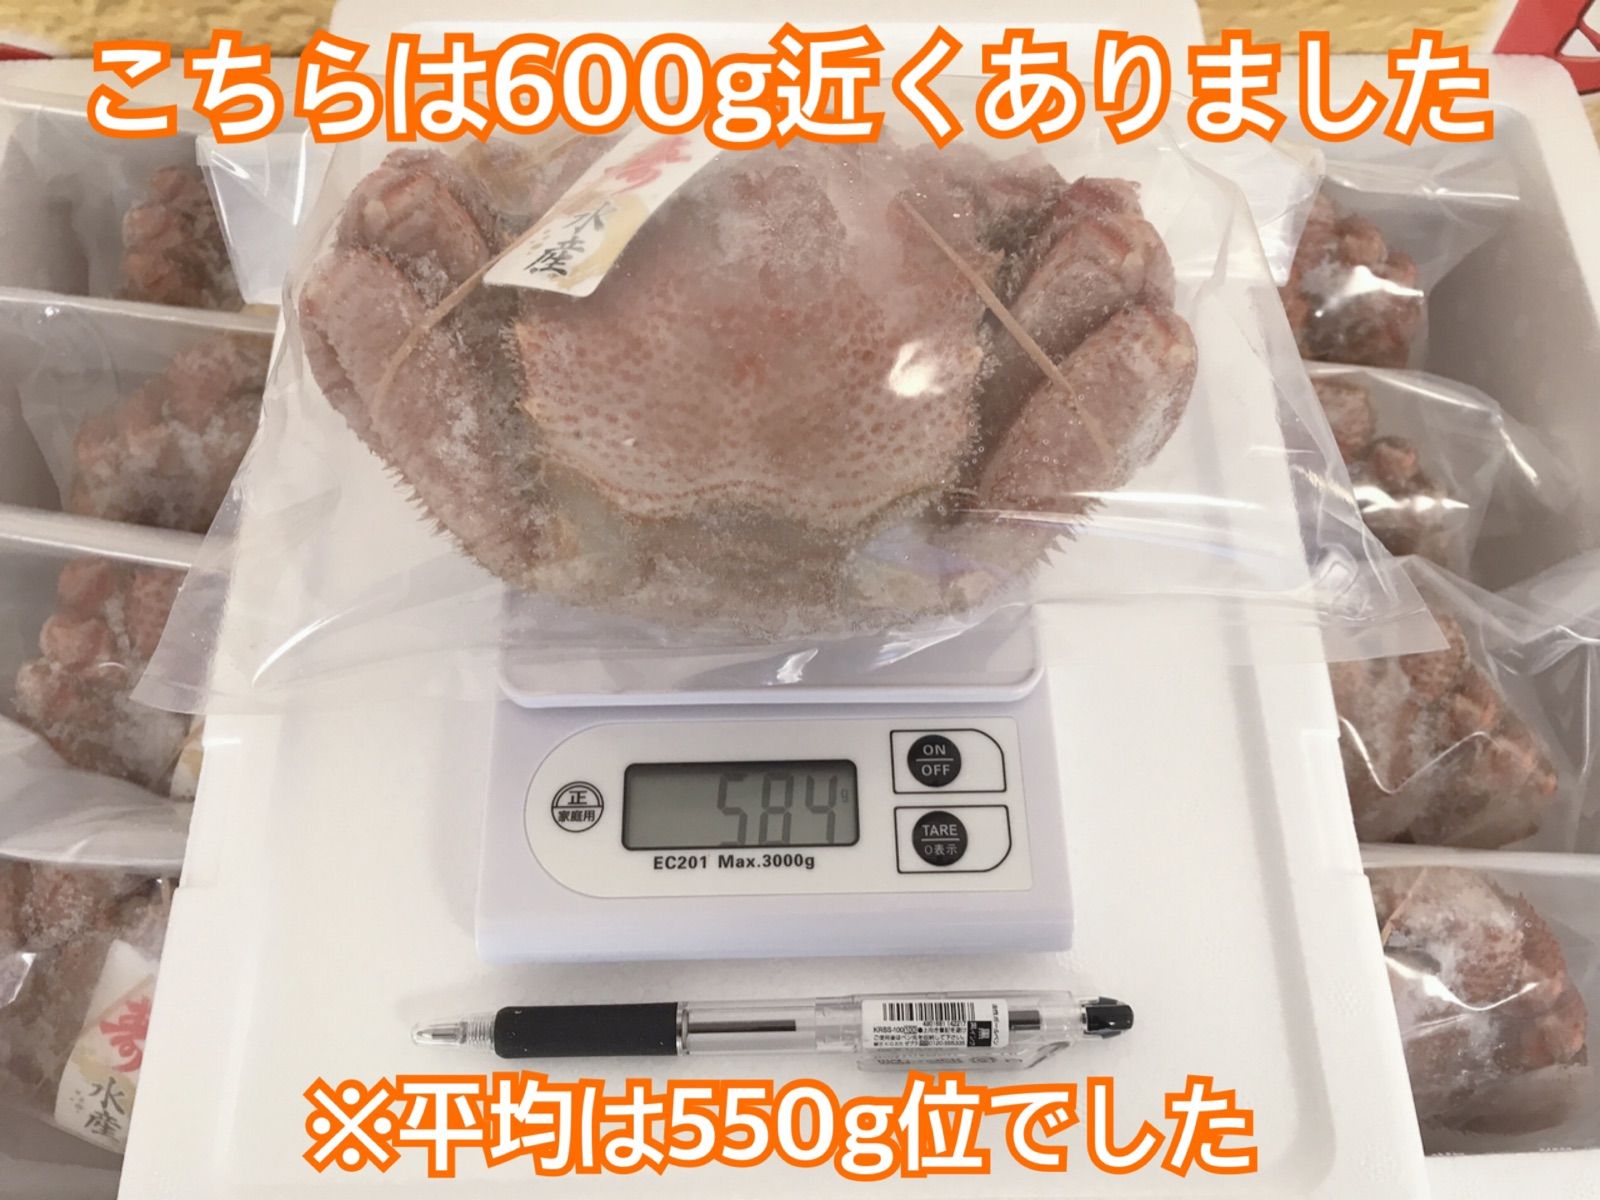 【激安特価】北海道産 毛蟹 約500g 身もミソも濃厚 3特 冷凍 ボイル-6